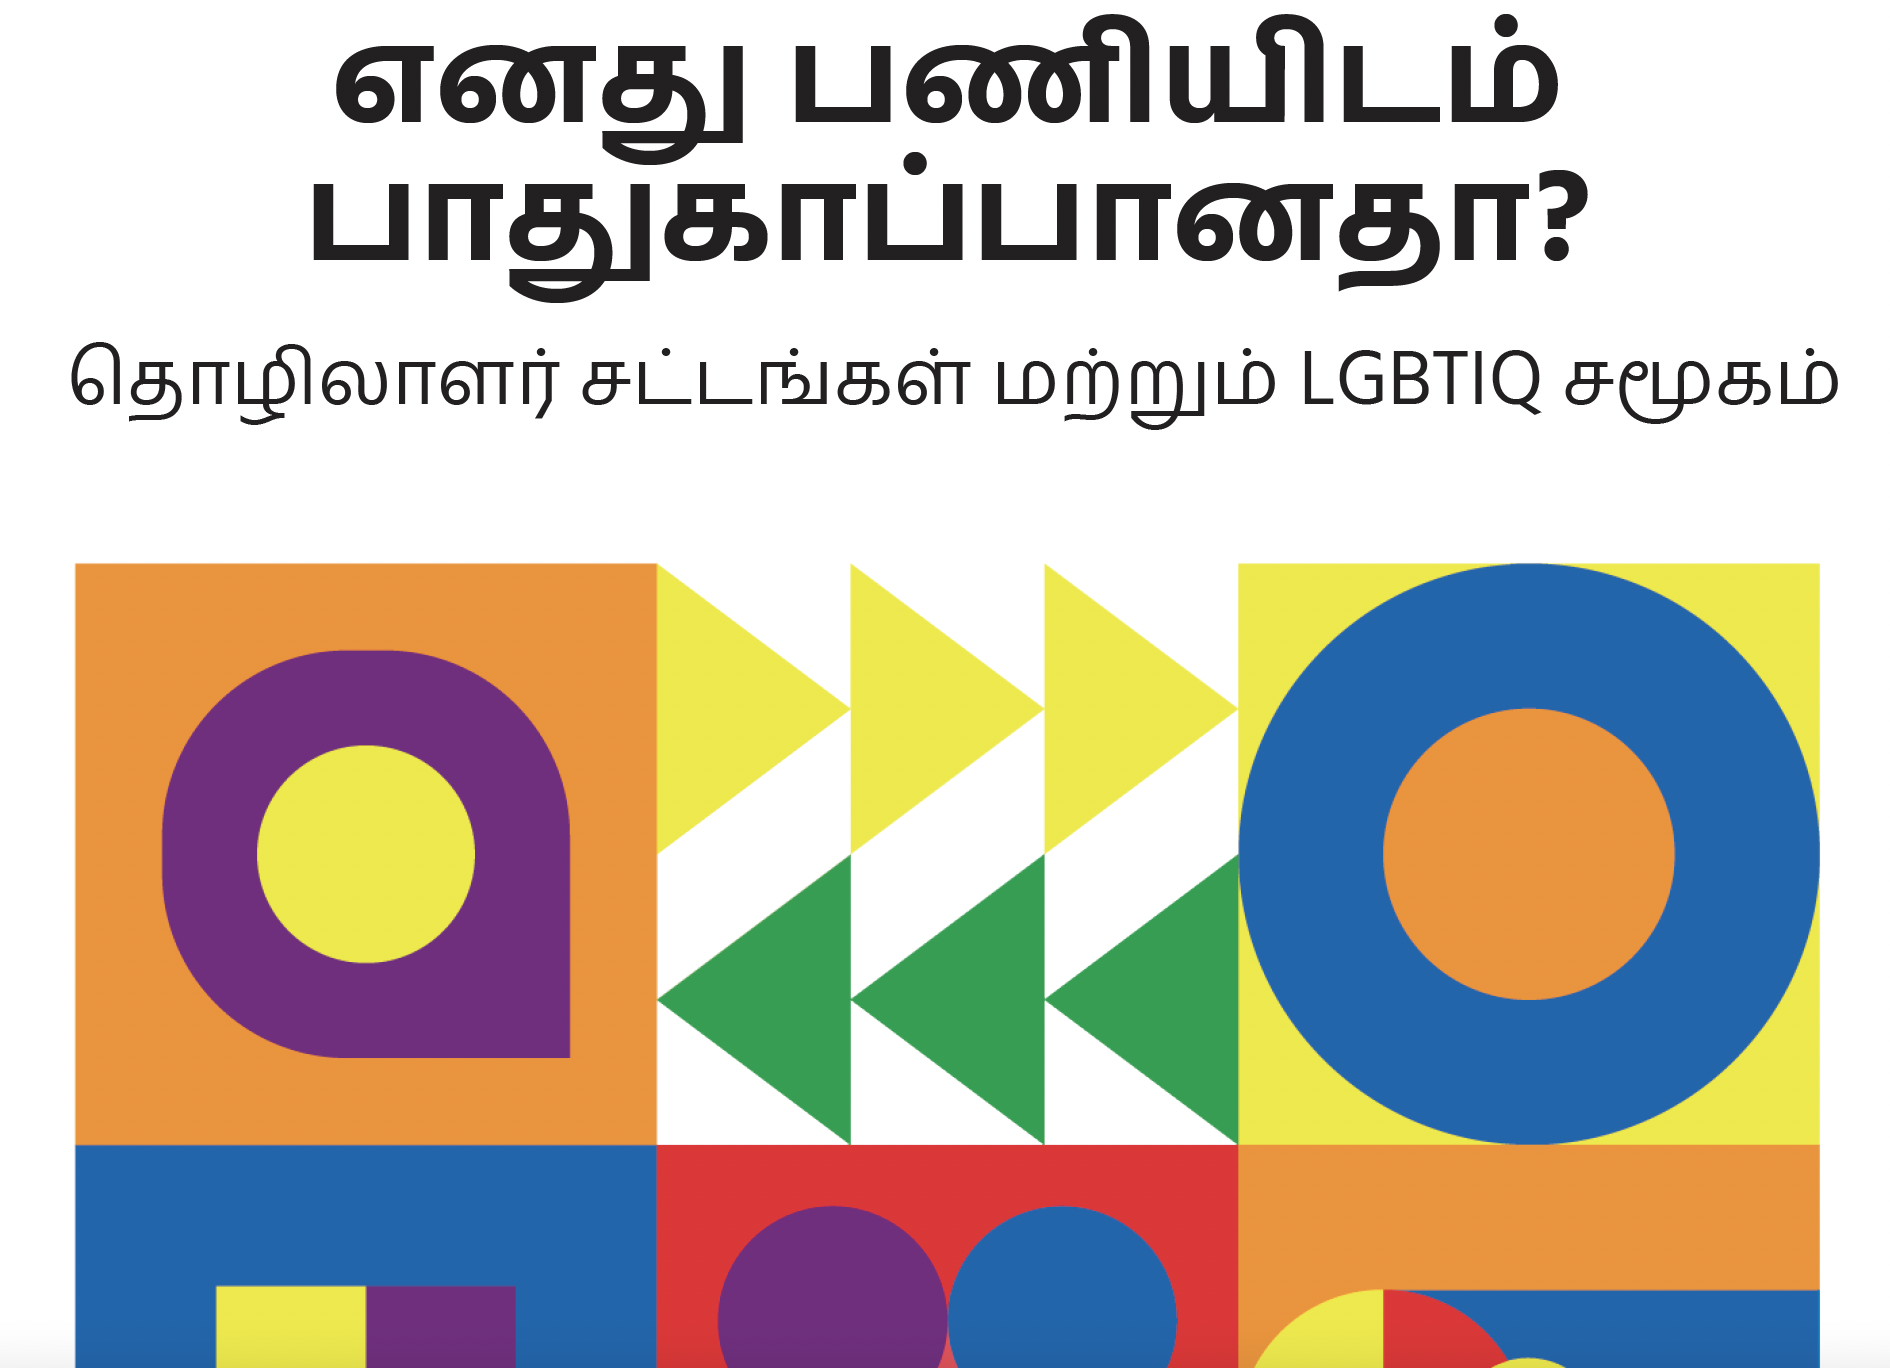 இலங்கையில் LGBTIQ நபர்களுக்கு சட்டப் பாதுகாப்பை வலுப்படுத்துதல்: நியாயப்படுத்தலுக்கான பாதை